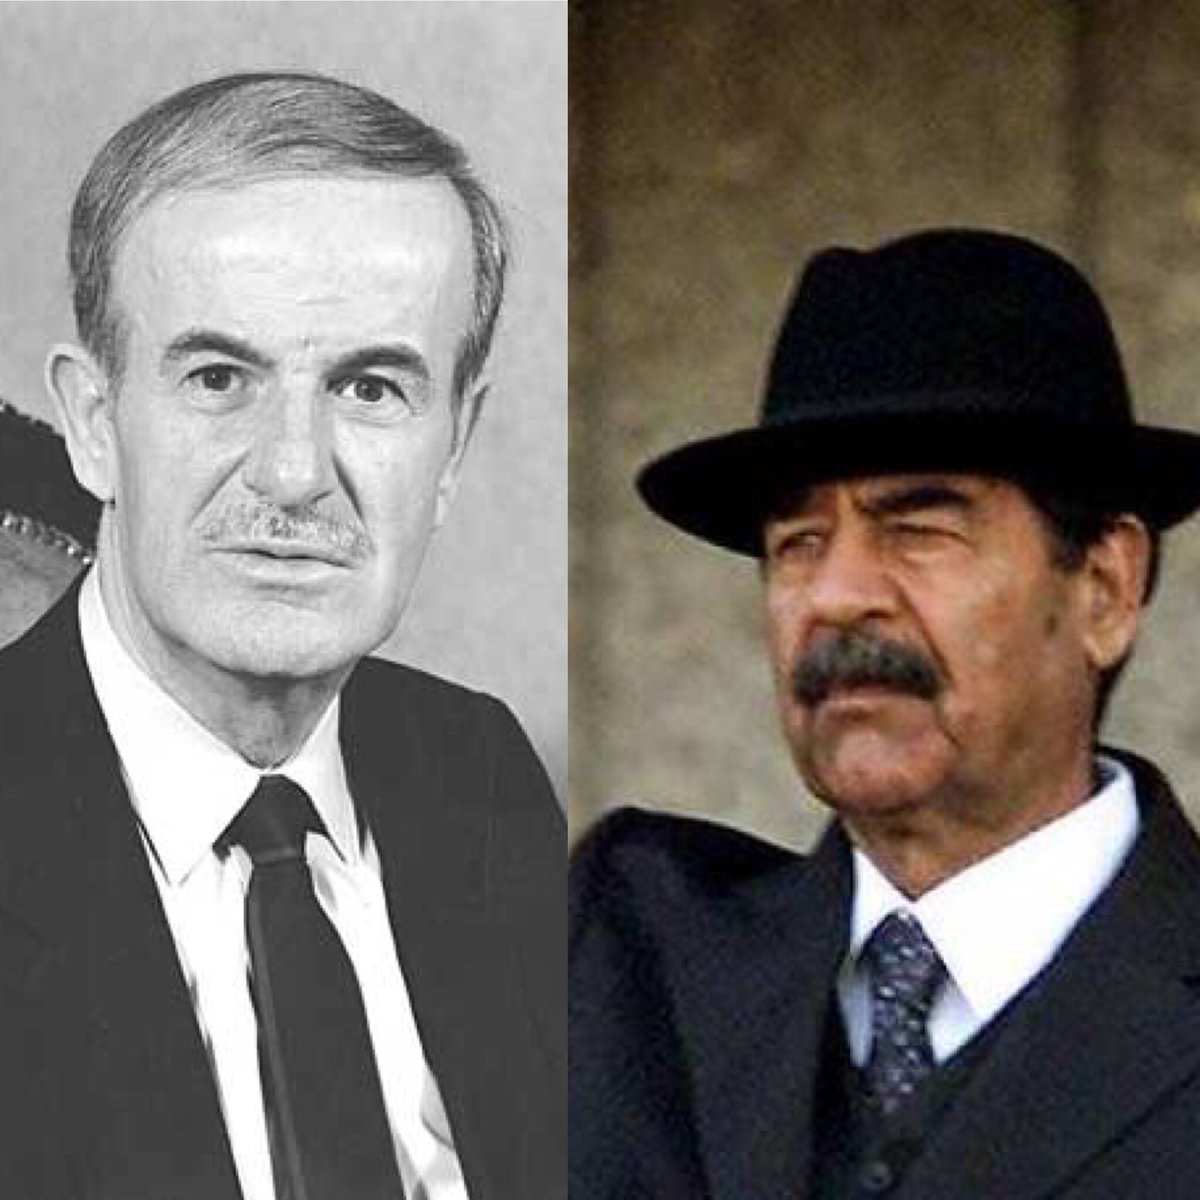 رسائل سرية تُكشف للمرة الأولى بين صدام حسين وحافظ الأسد...ما هي!!؟ "الجزء الأول"